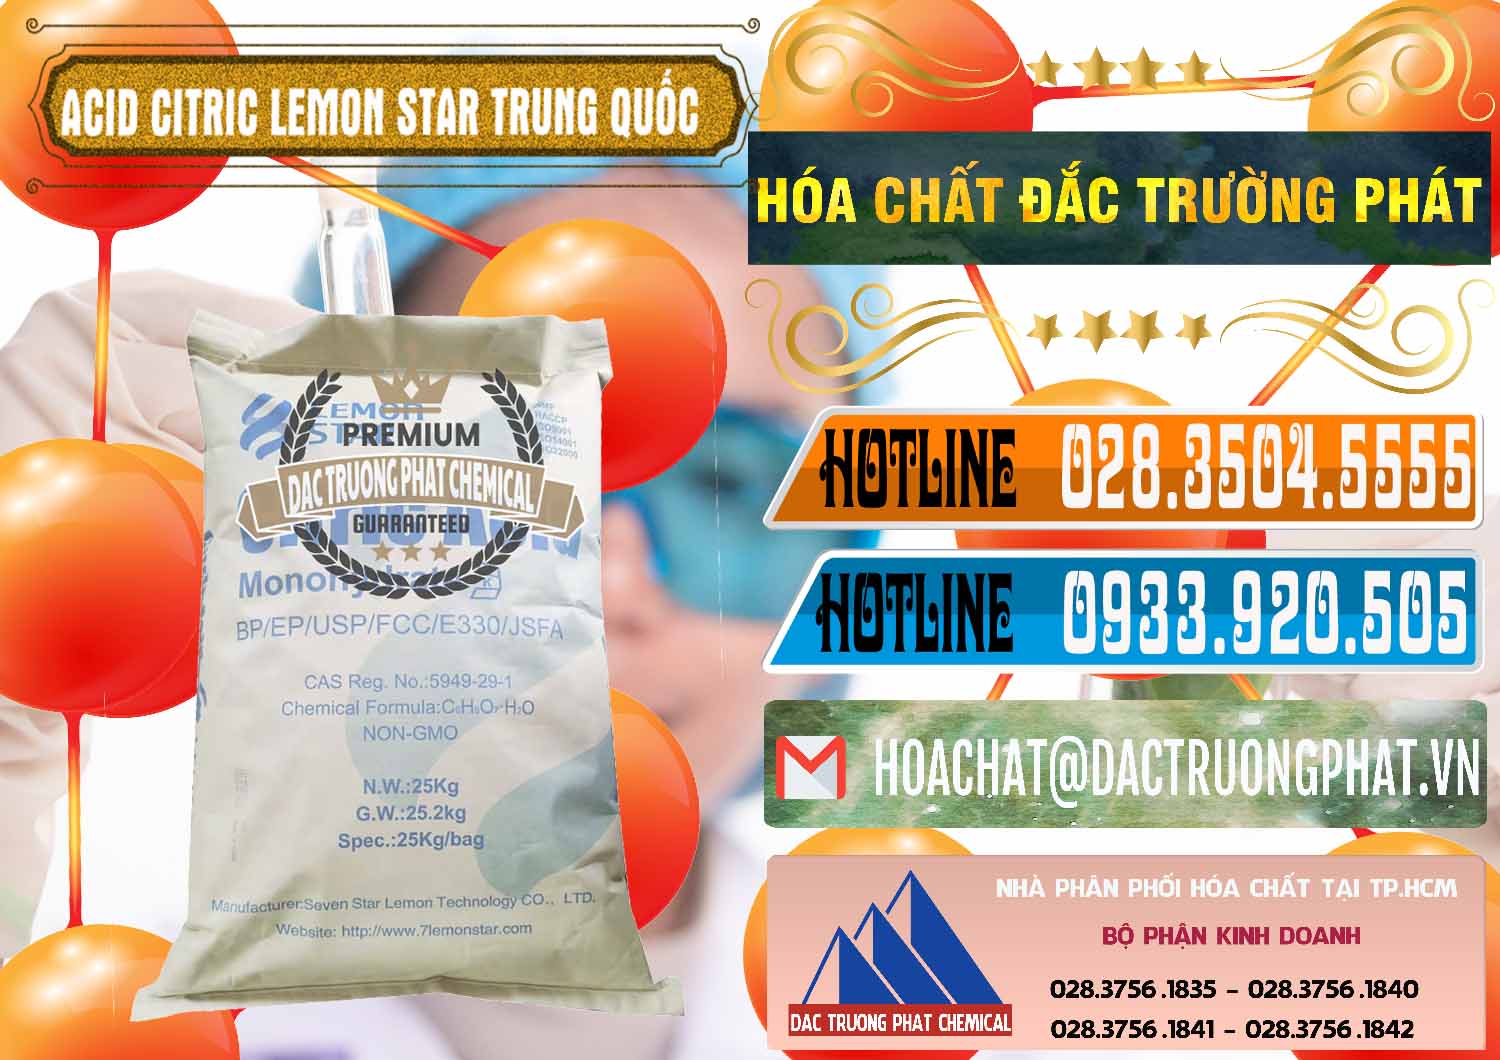 Đơn vị chuyên kinh doanh & bán Acid Citric - Axit Citric BP/EP/USP/FCC/E330 Lemon Star Trung Quốc China - 0286 - Đơn vị chuyên nhập khẩu và cung cấp hóa chất tại TP.HCM - stmp.net